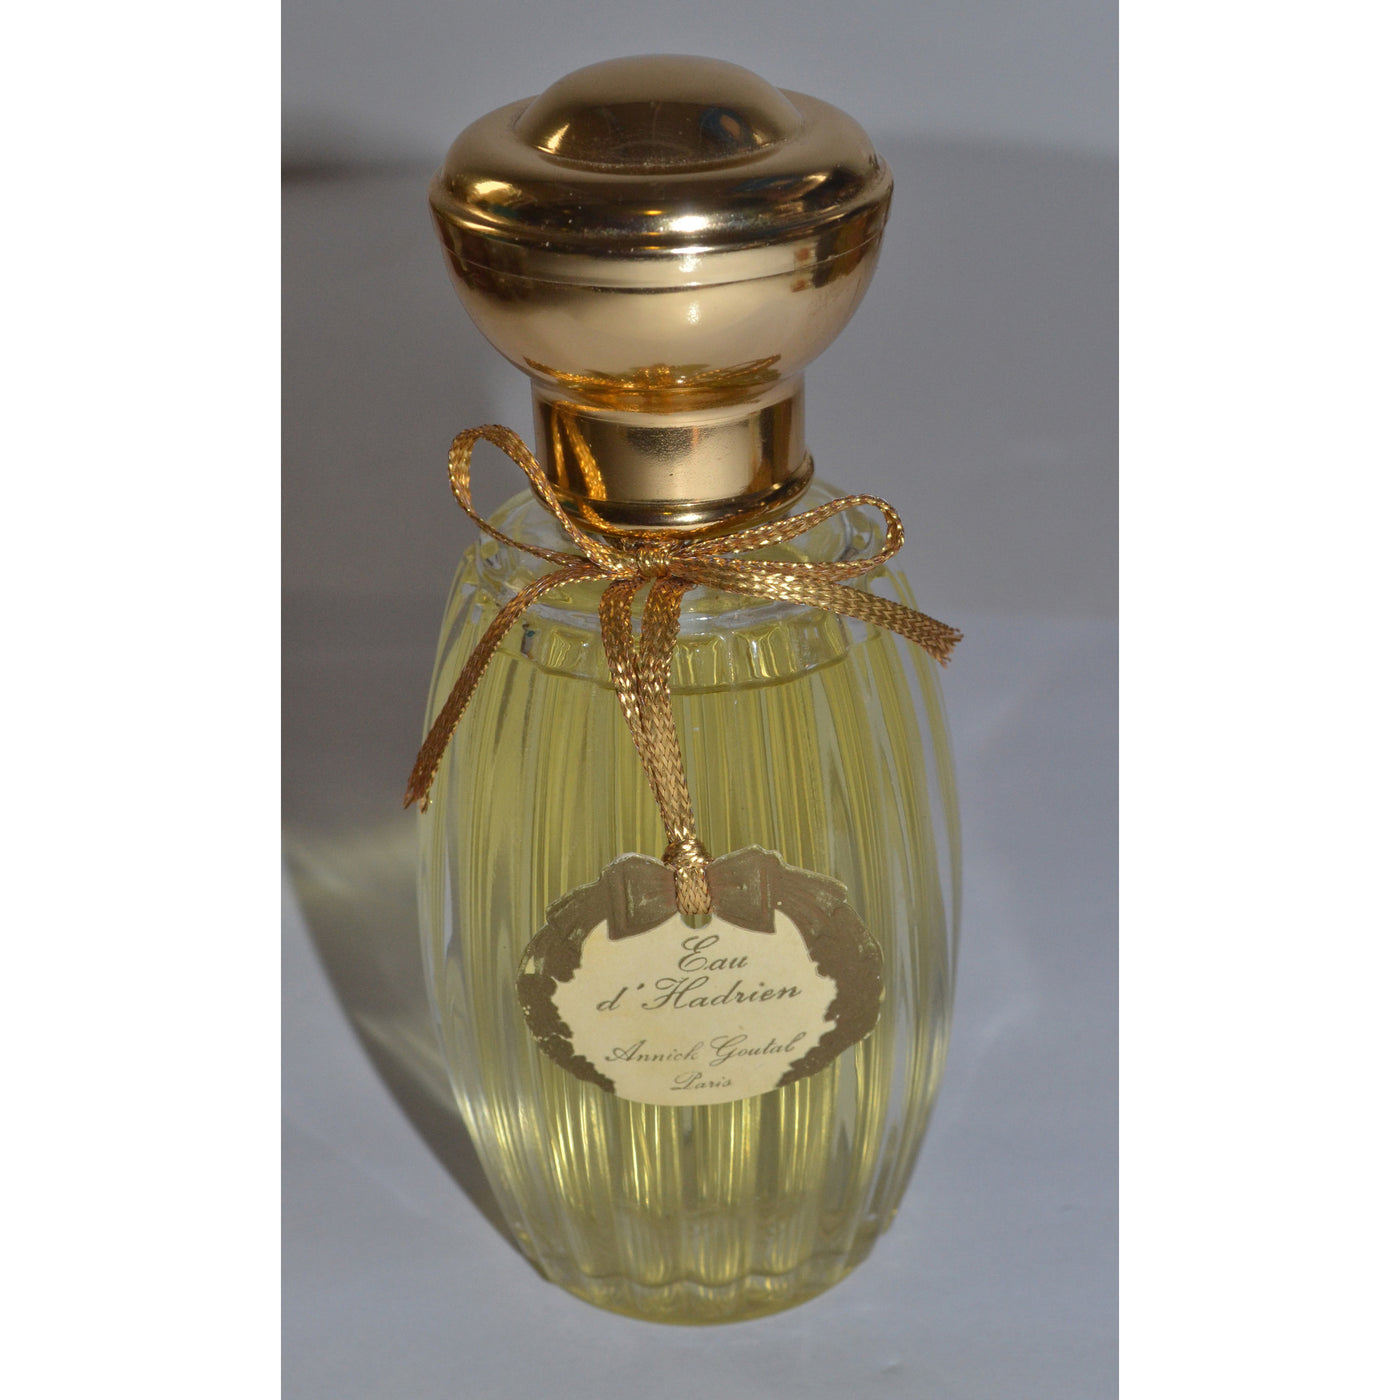 Original Eau d' Hadrien Eau De Parfum By Annick Goutal